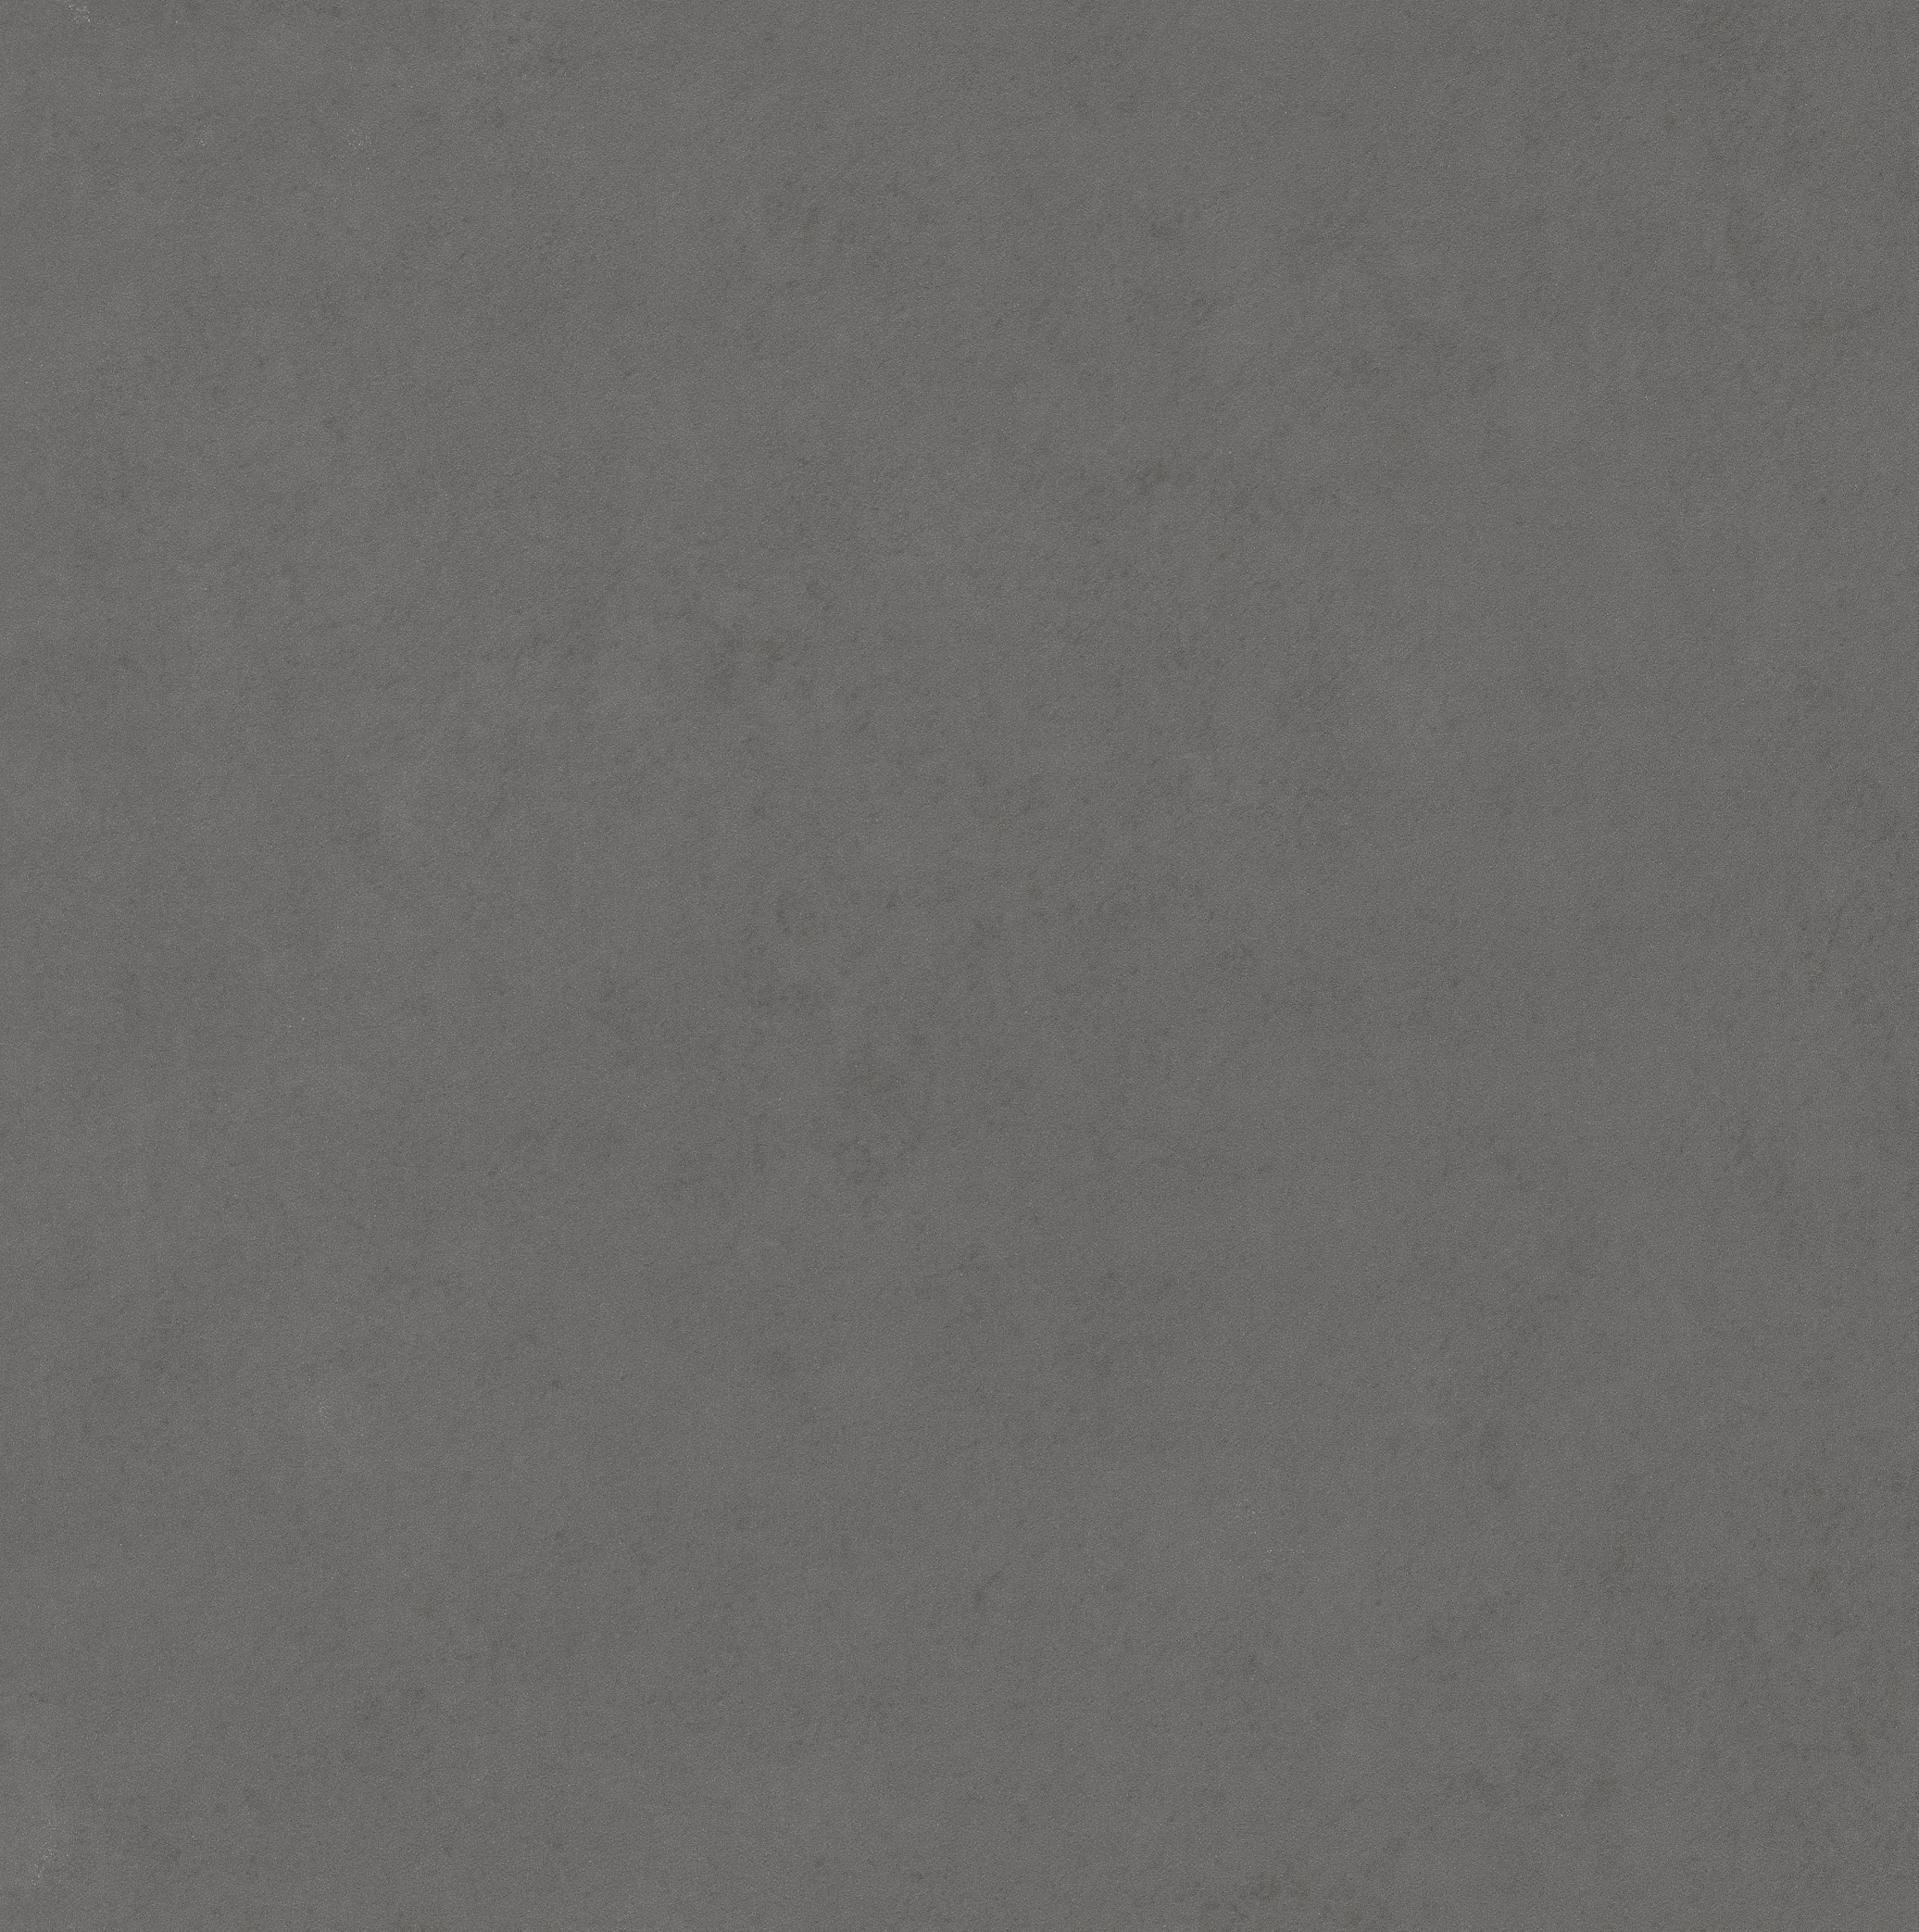 Boden/Wand Fliese Scope dark grey 60x60 R10